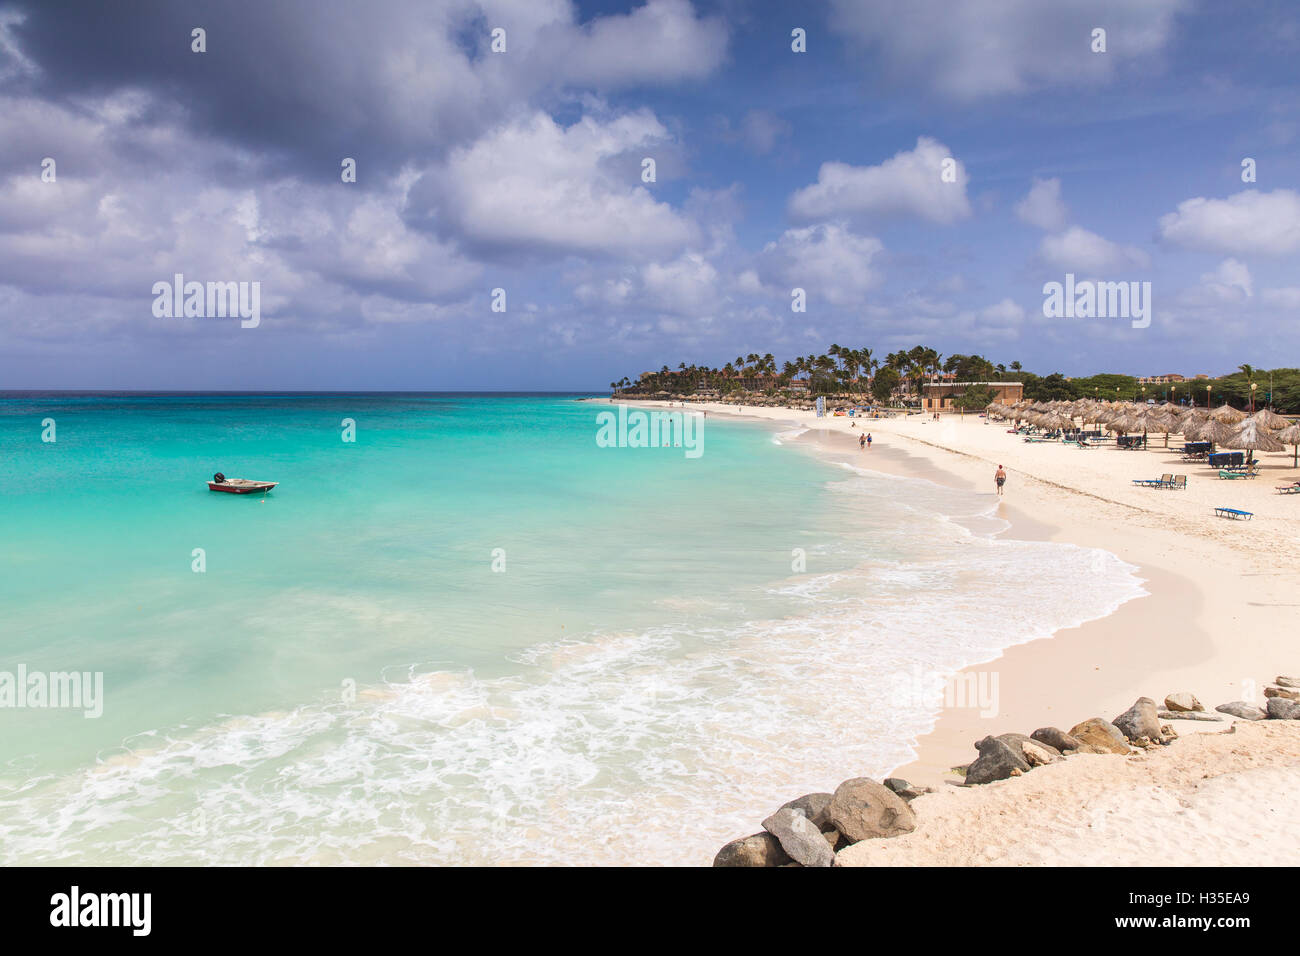 Avis de Divi Beach, Aruba, Lesser Antilles, Caraïbes, Antilles néerlandaises Banque D'Images